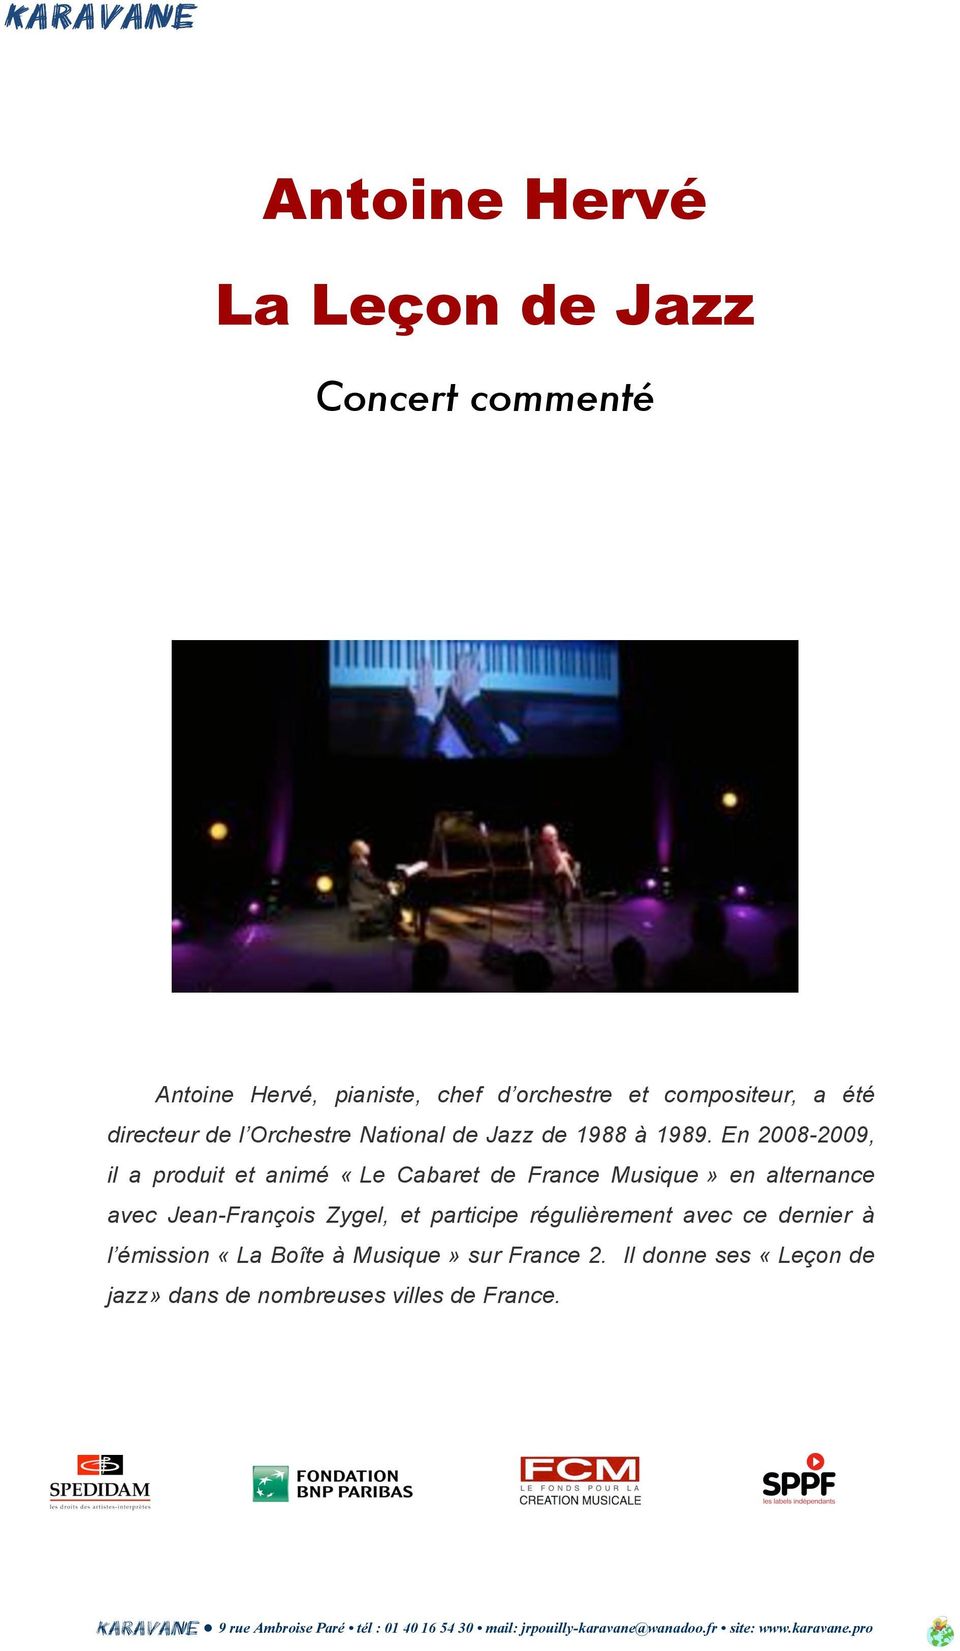 En 2008-2009, il a produit et animé «Le Cabaret de France Musique» en alternance avec Jean-François Zygel, et